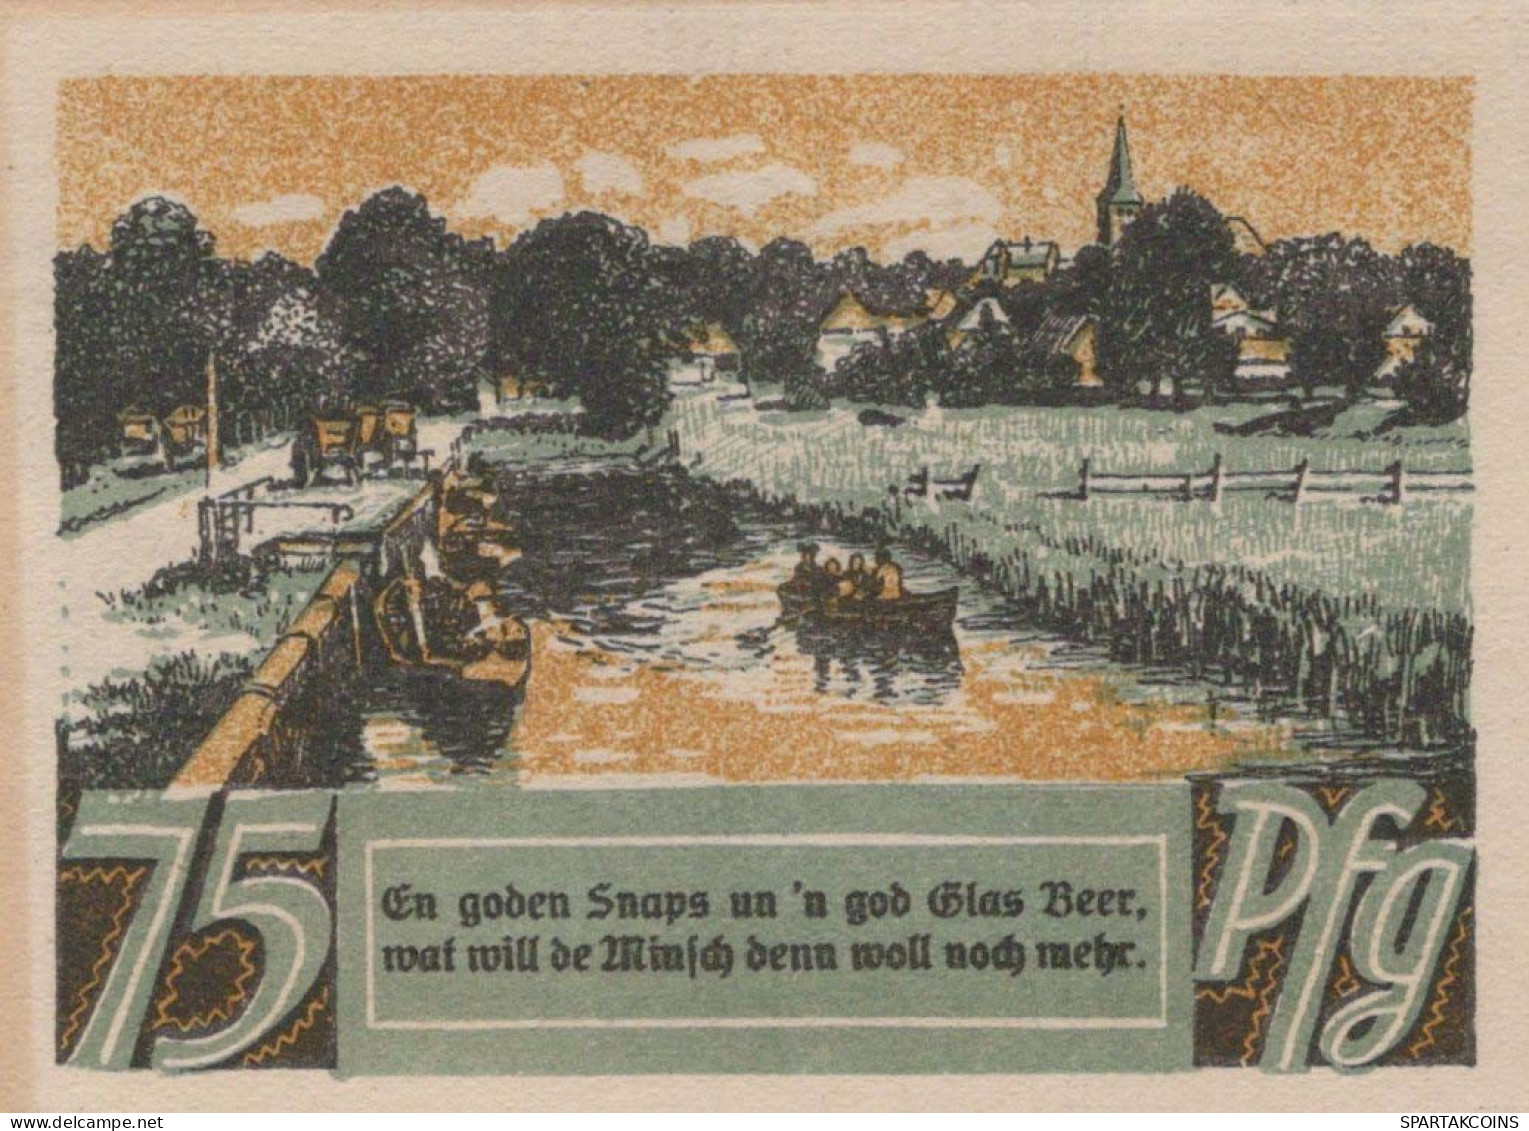 75 PFENNIG 1921 Stadt BREMEN Bremen UNC DEUTSCHLAND Notgeld Banknote #PC185 - [11] Local Banknote Issues